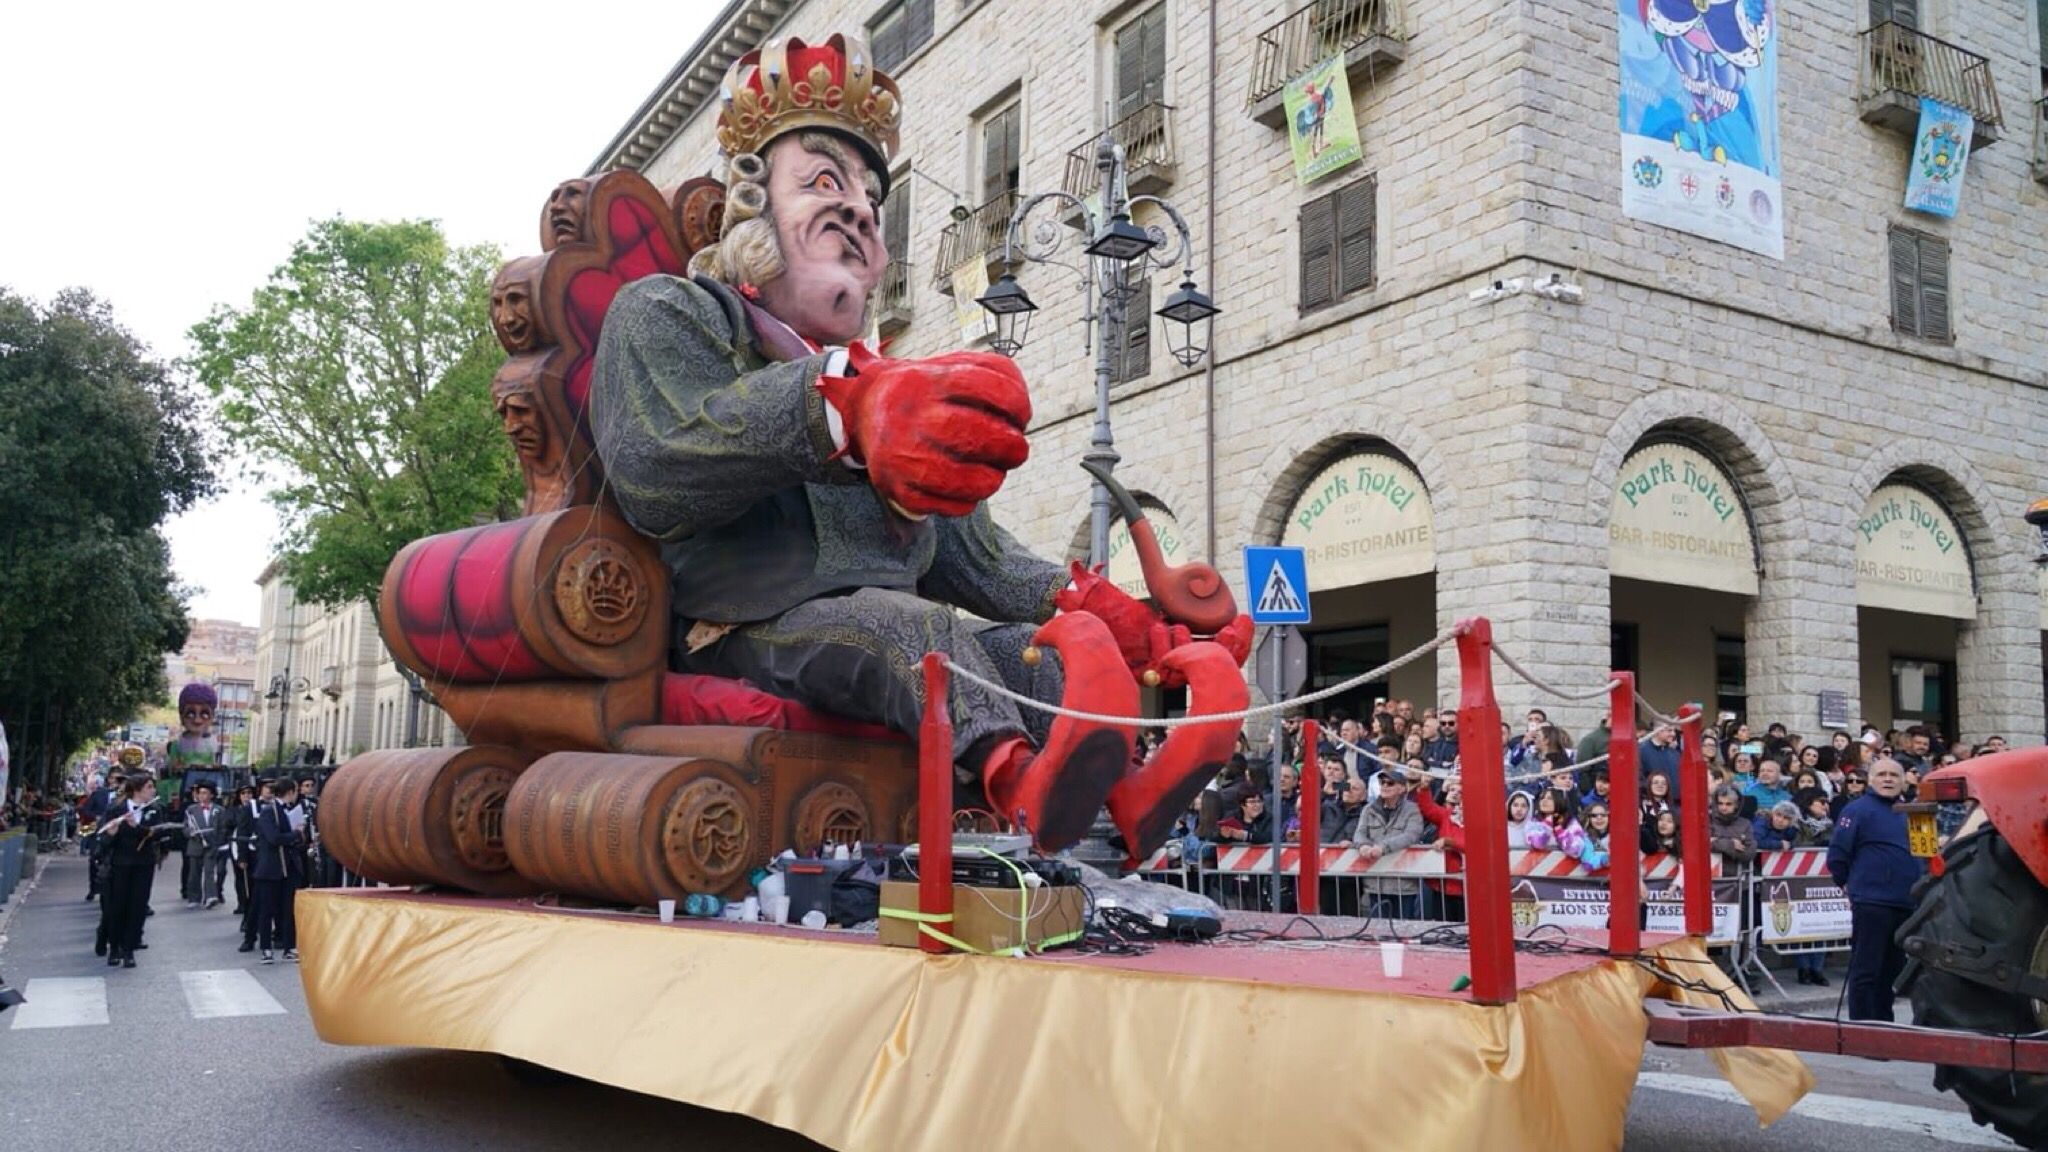 Carnevale Tempio, successo per la prima sfilata: attesa per il gran finale